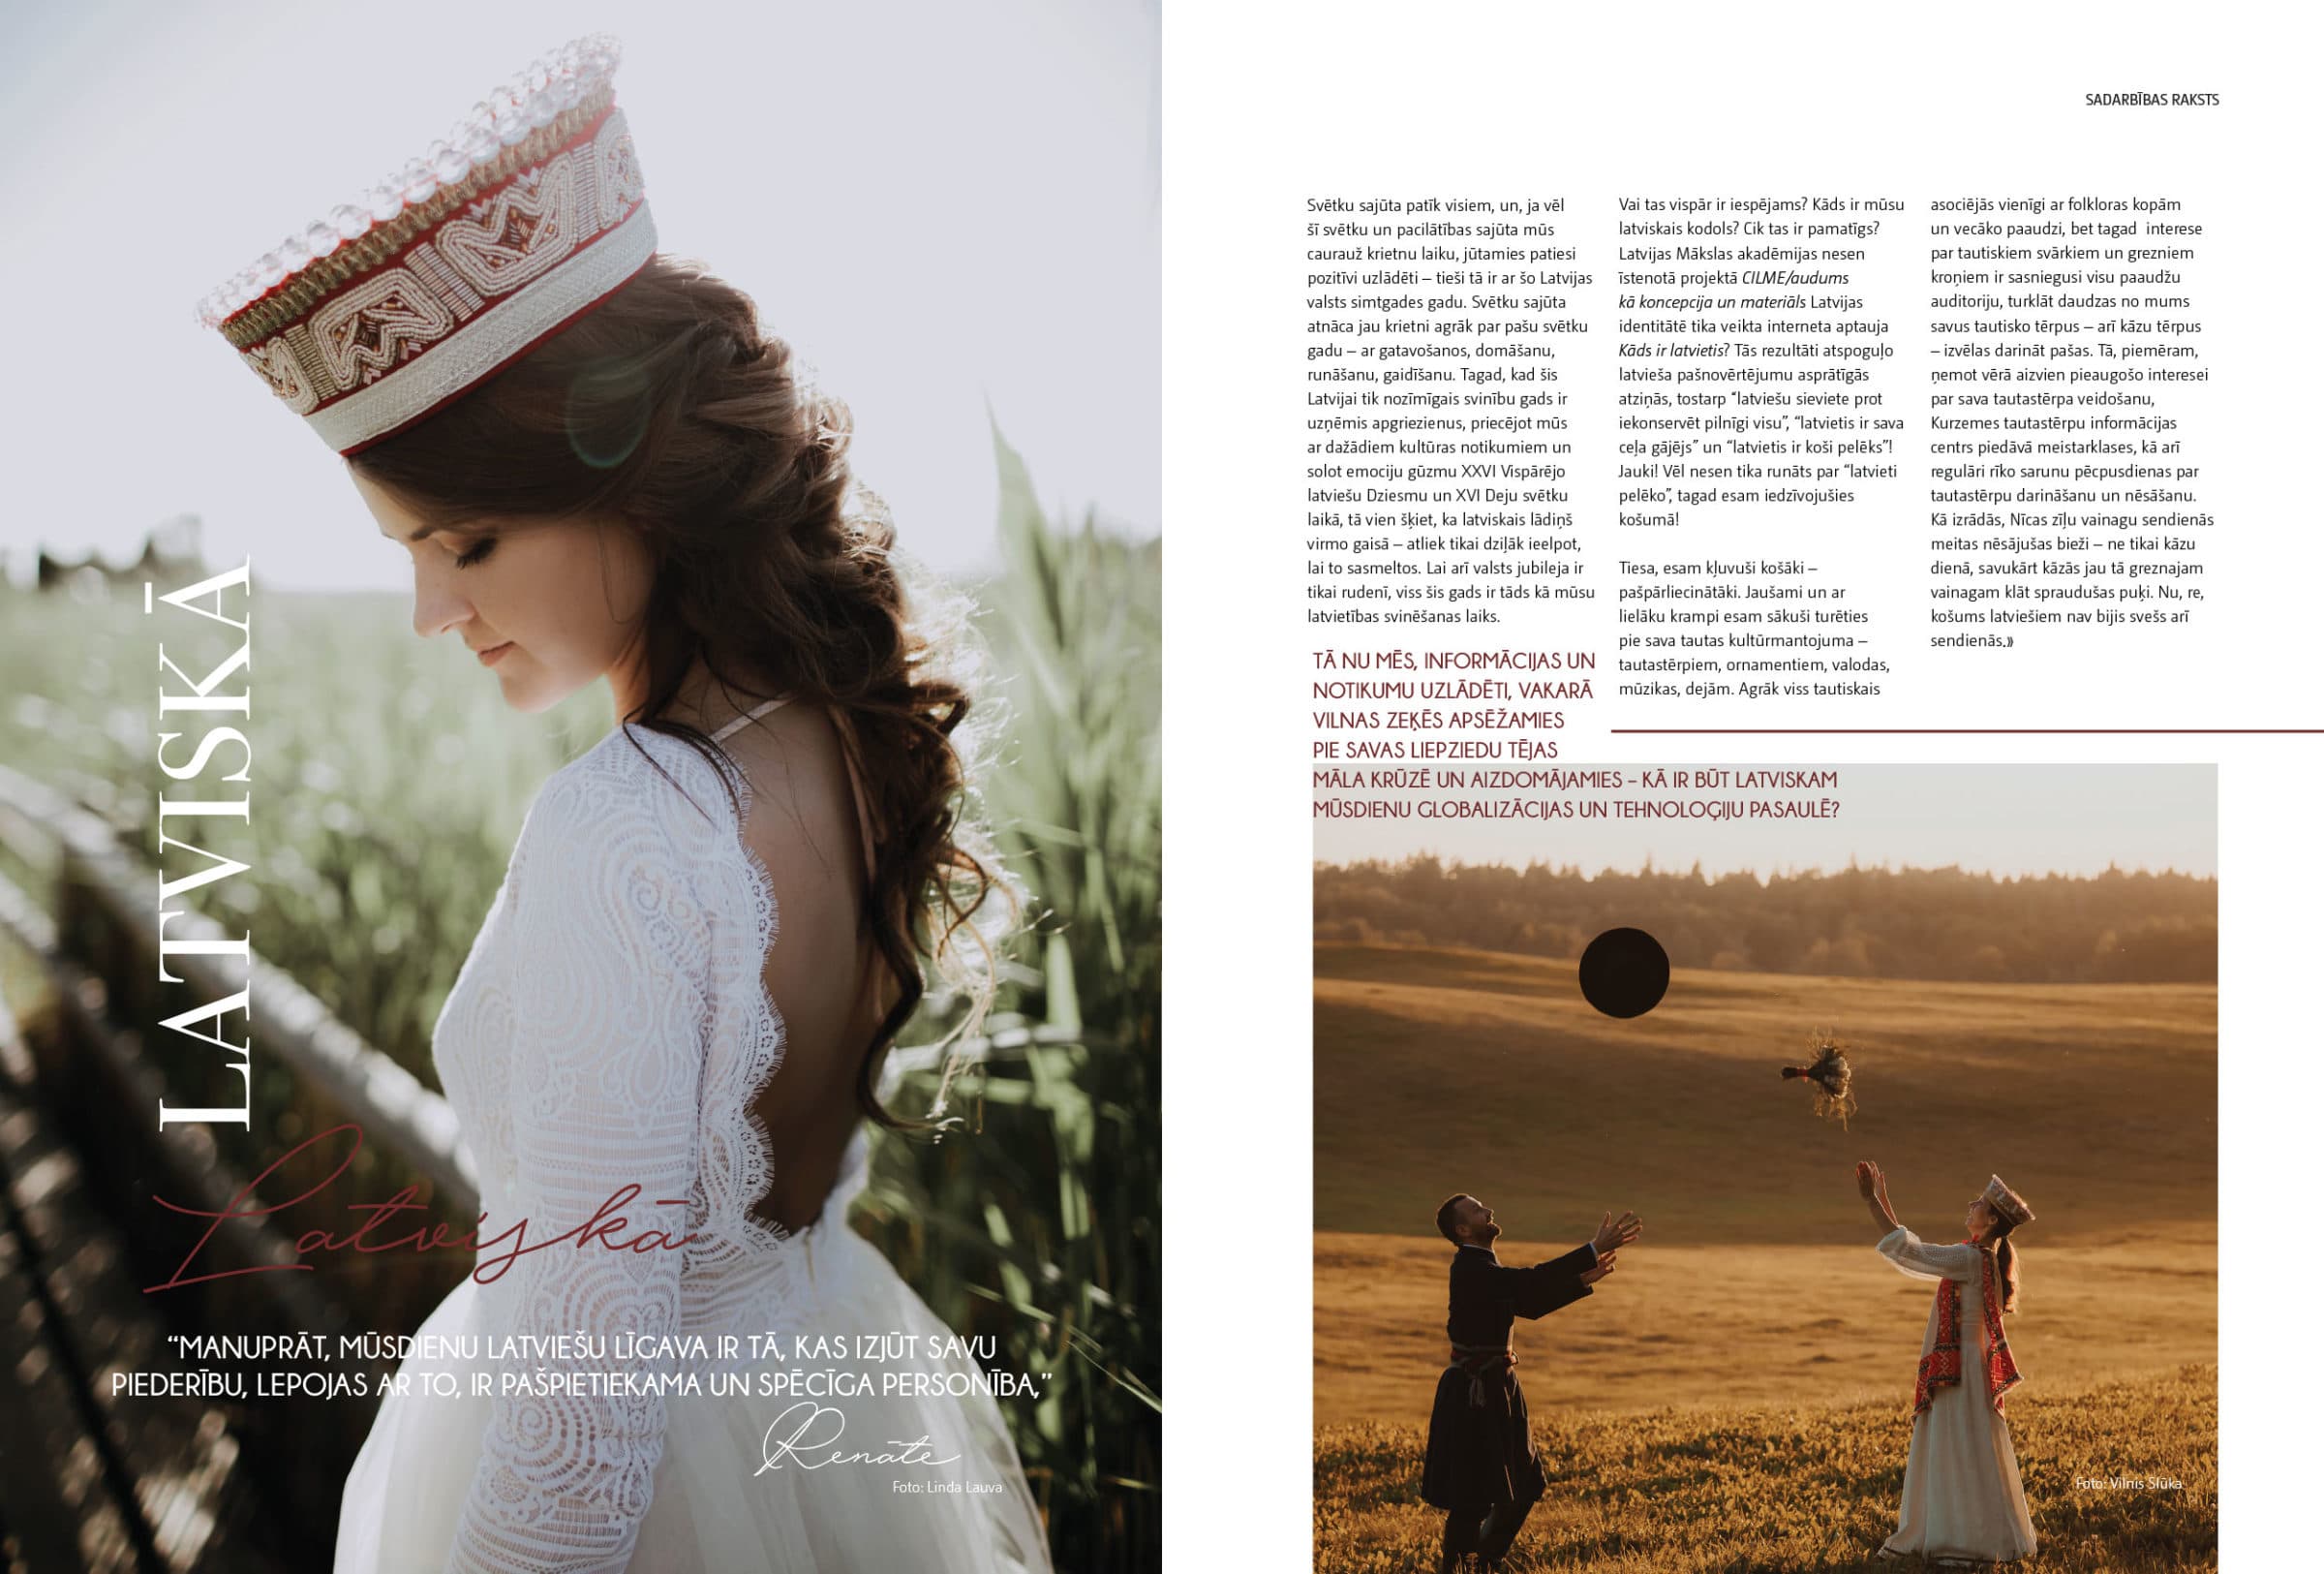 Amelii Bride In PRECOS Magazine - Amelii